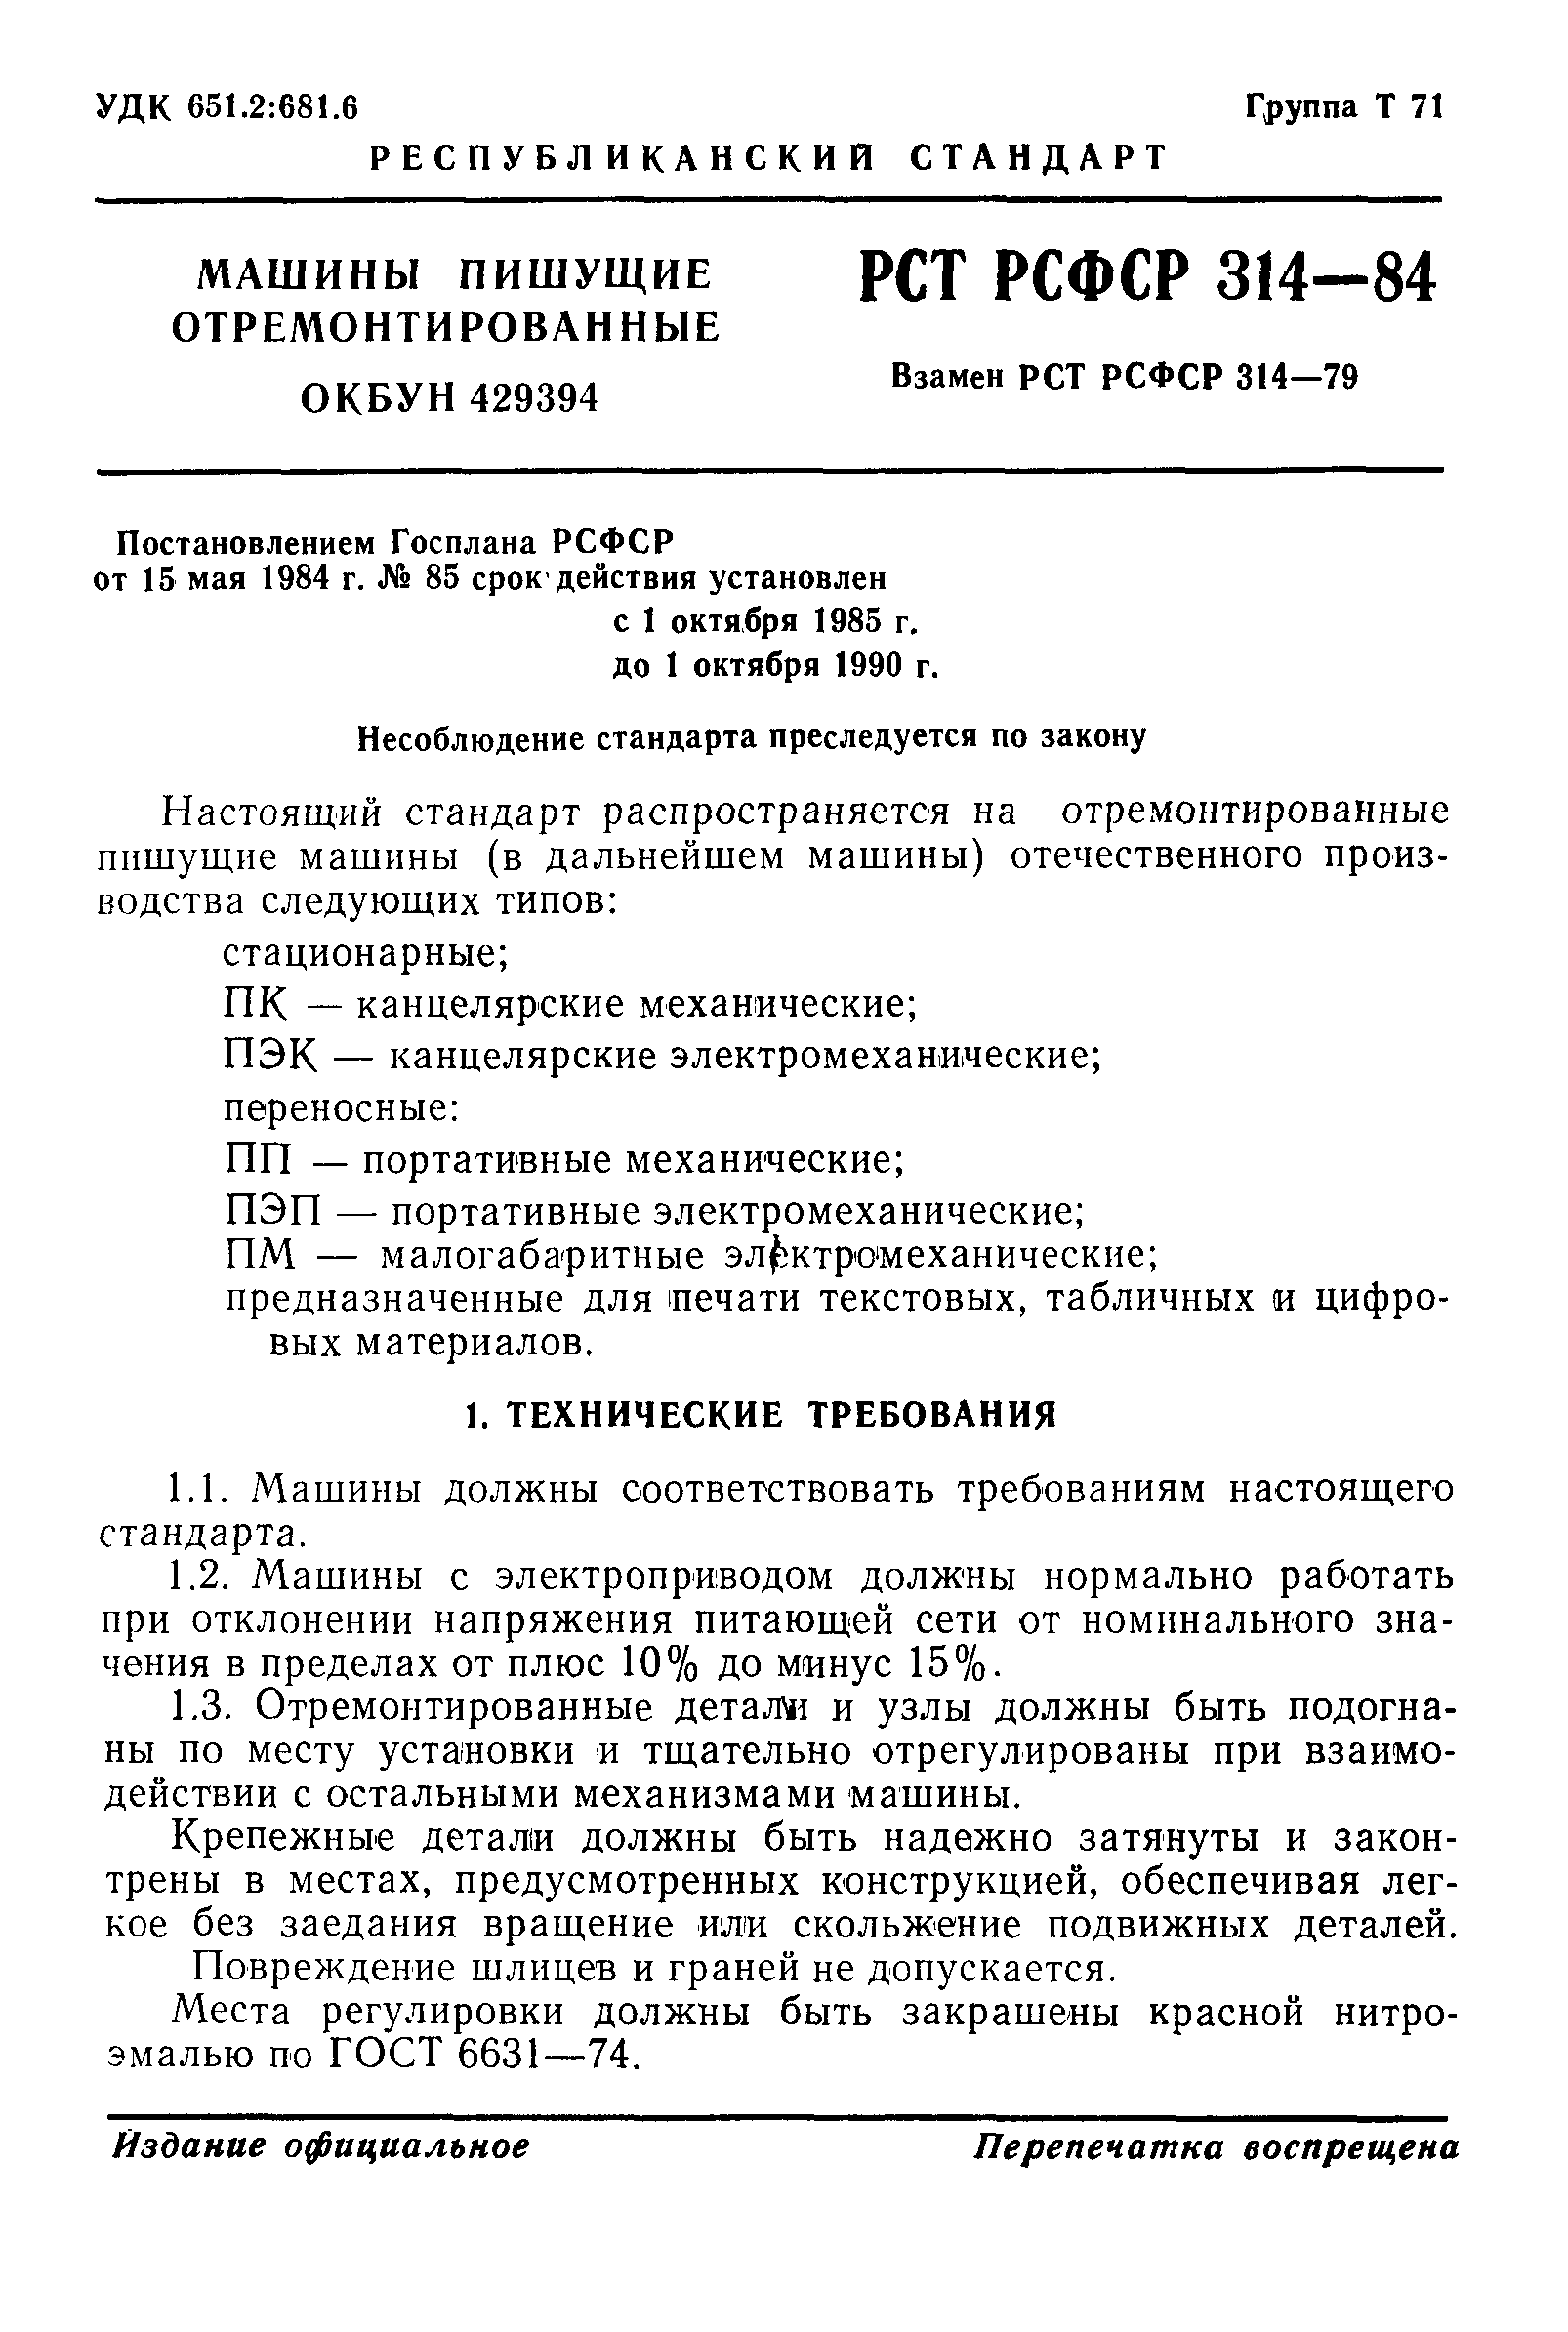 РСТ РСФСР 314-84